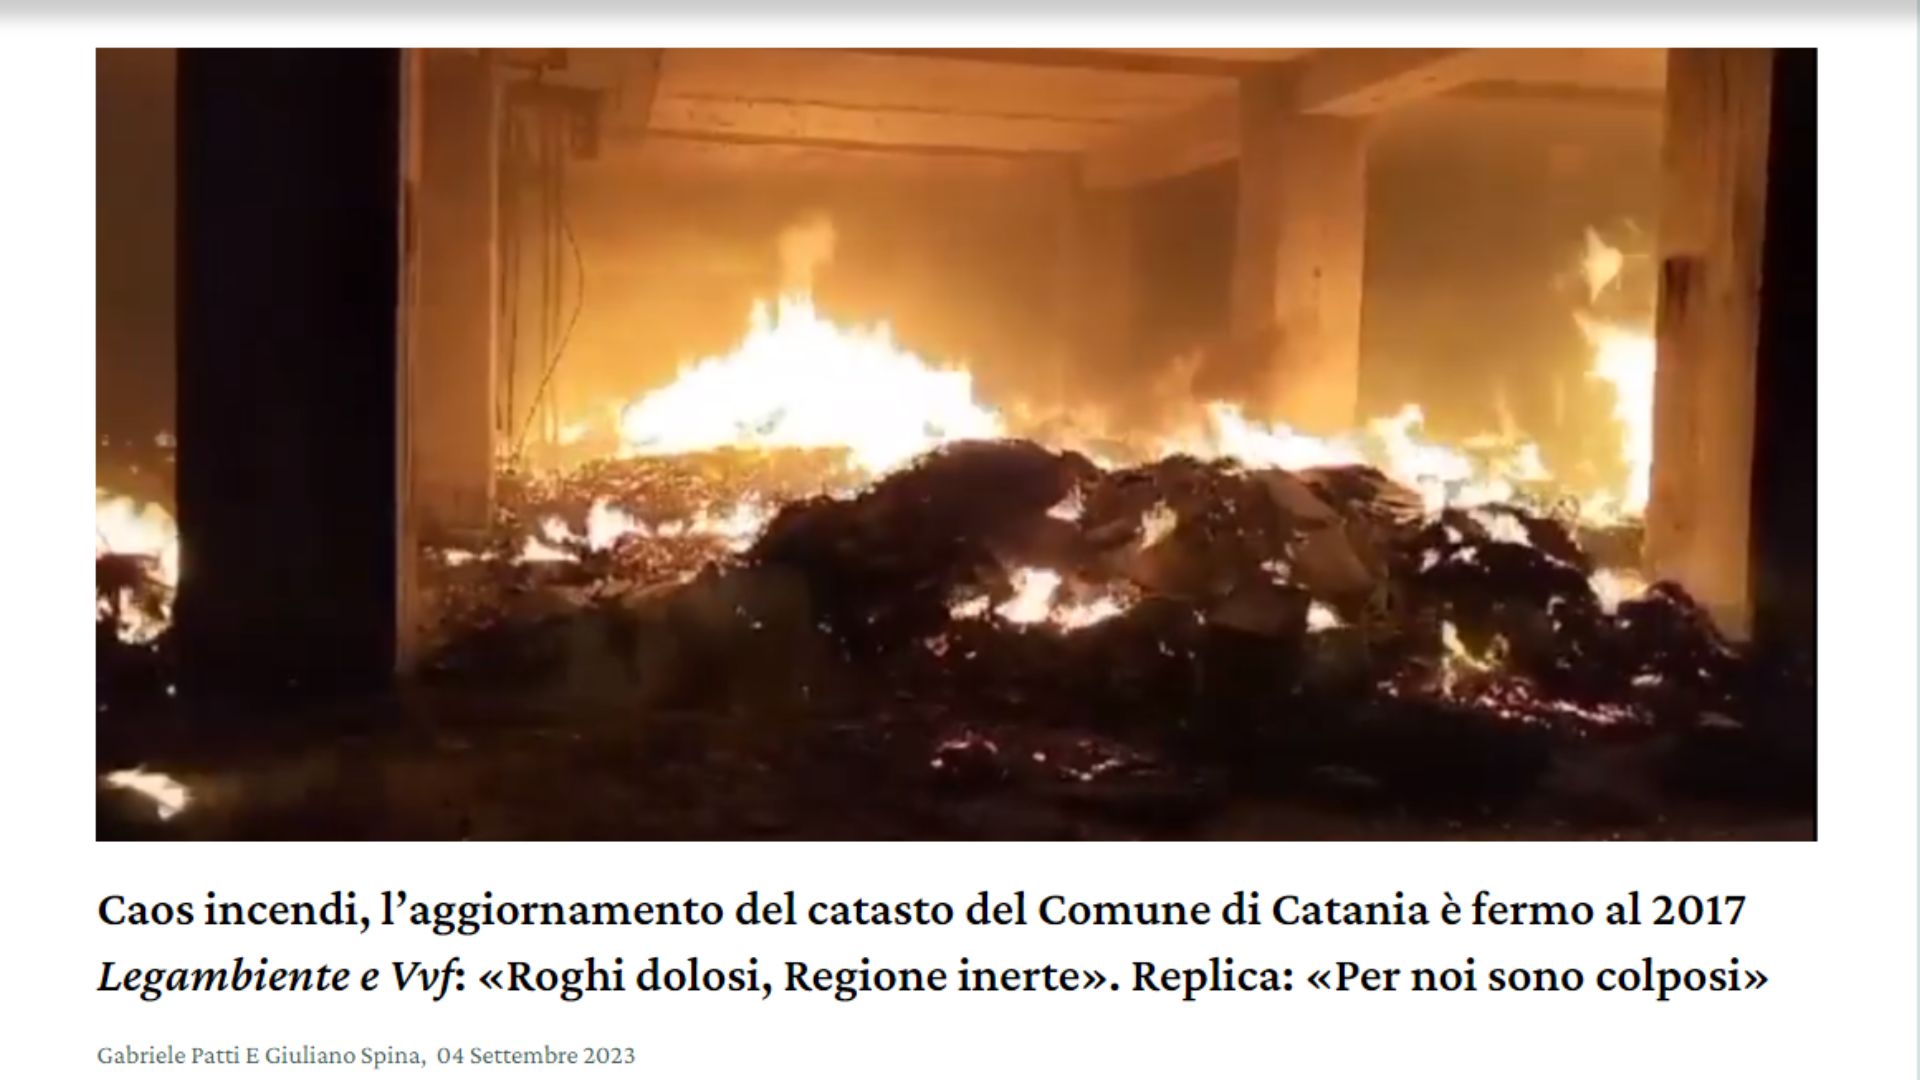 Il catasto degli incendi del Comune di Catania è fermo al 2018 e non al 2017<br>Rettifichiamo e ci scusiamo con i lettori